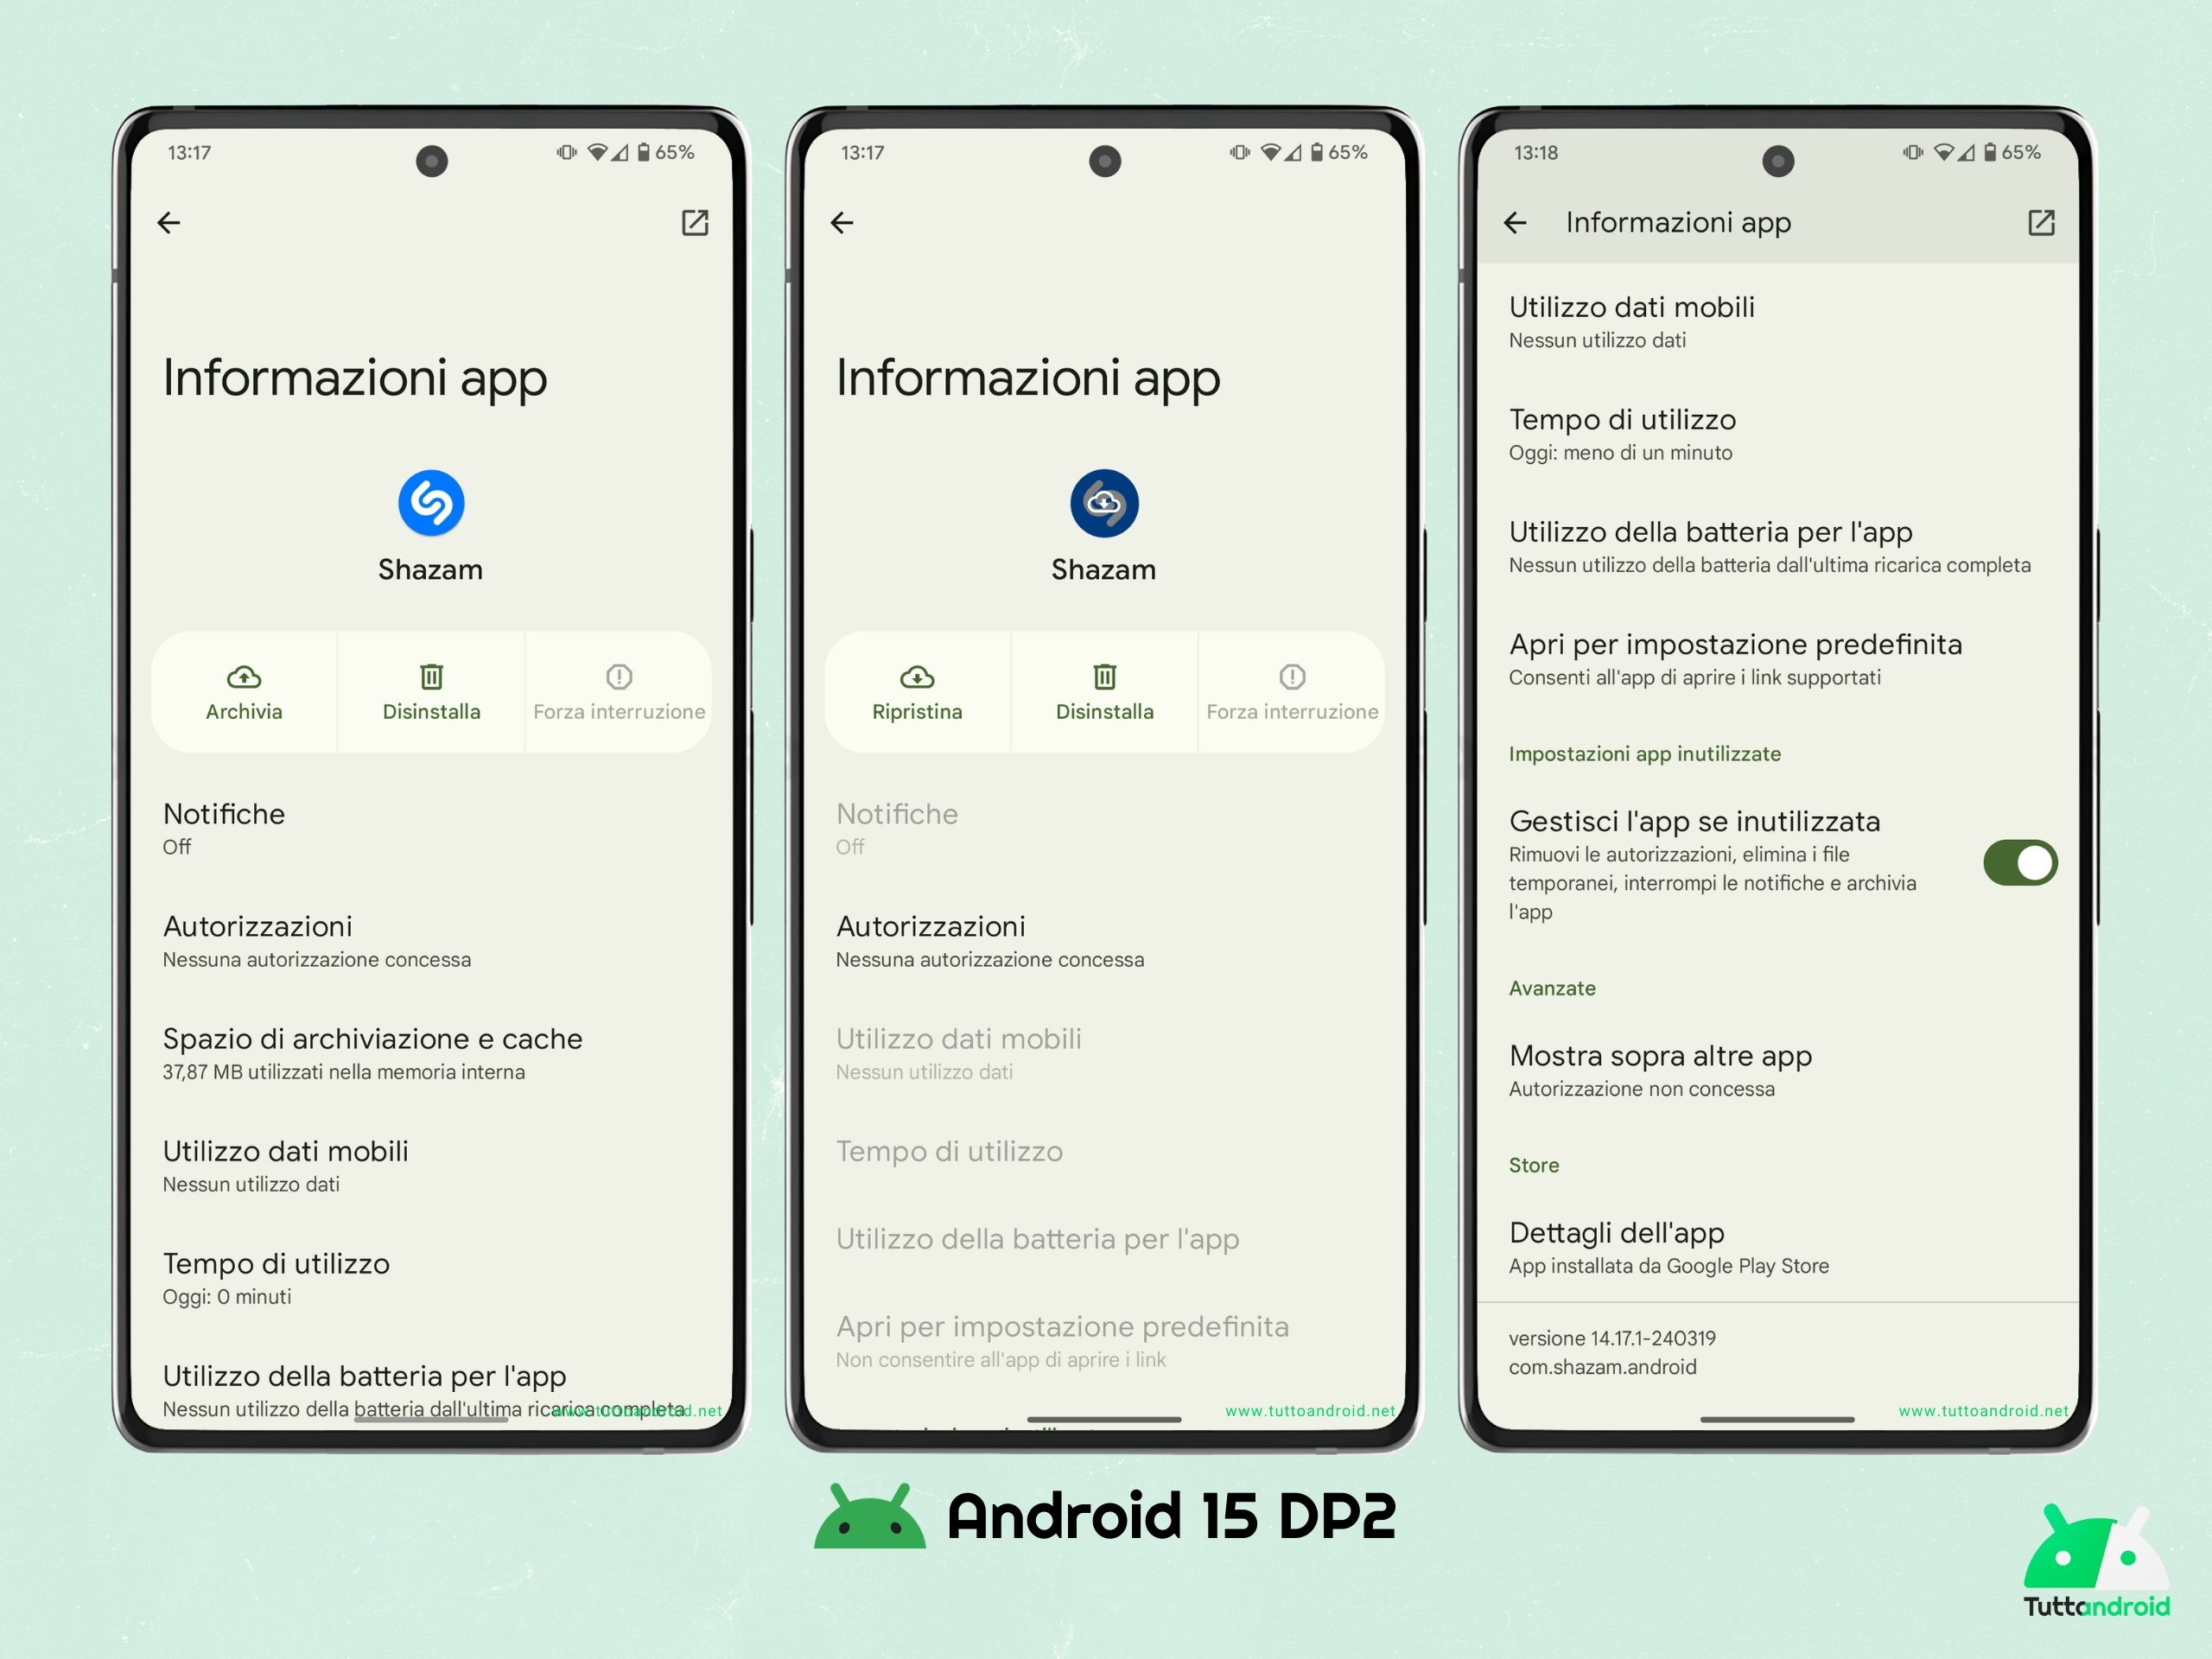 Android 15 DP2 - Archiviazione delle app